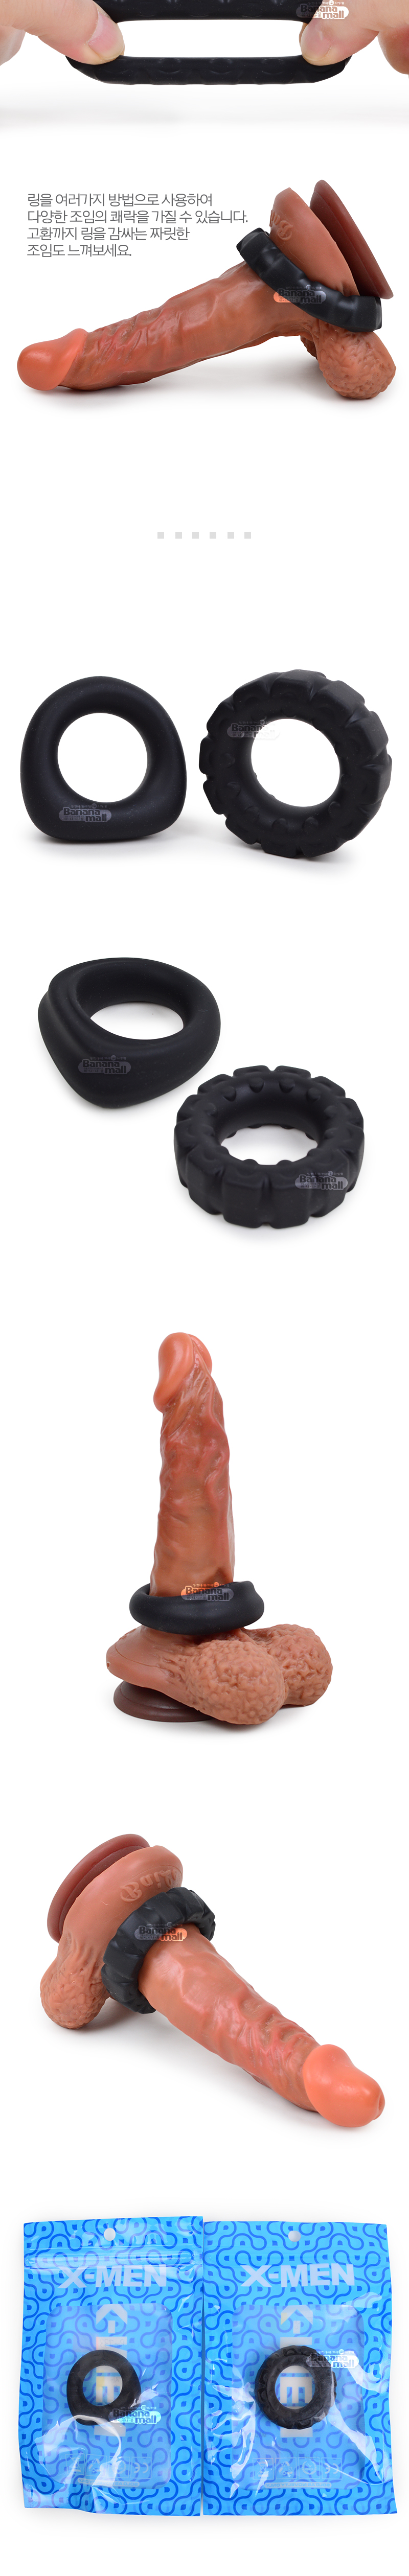 [남성 강화] 슈퍼 소프트 실리콘 콕 링(Super Soft Silicone Cock Ring)